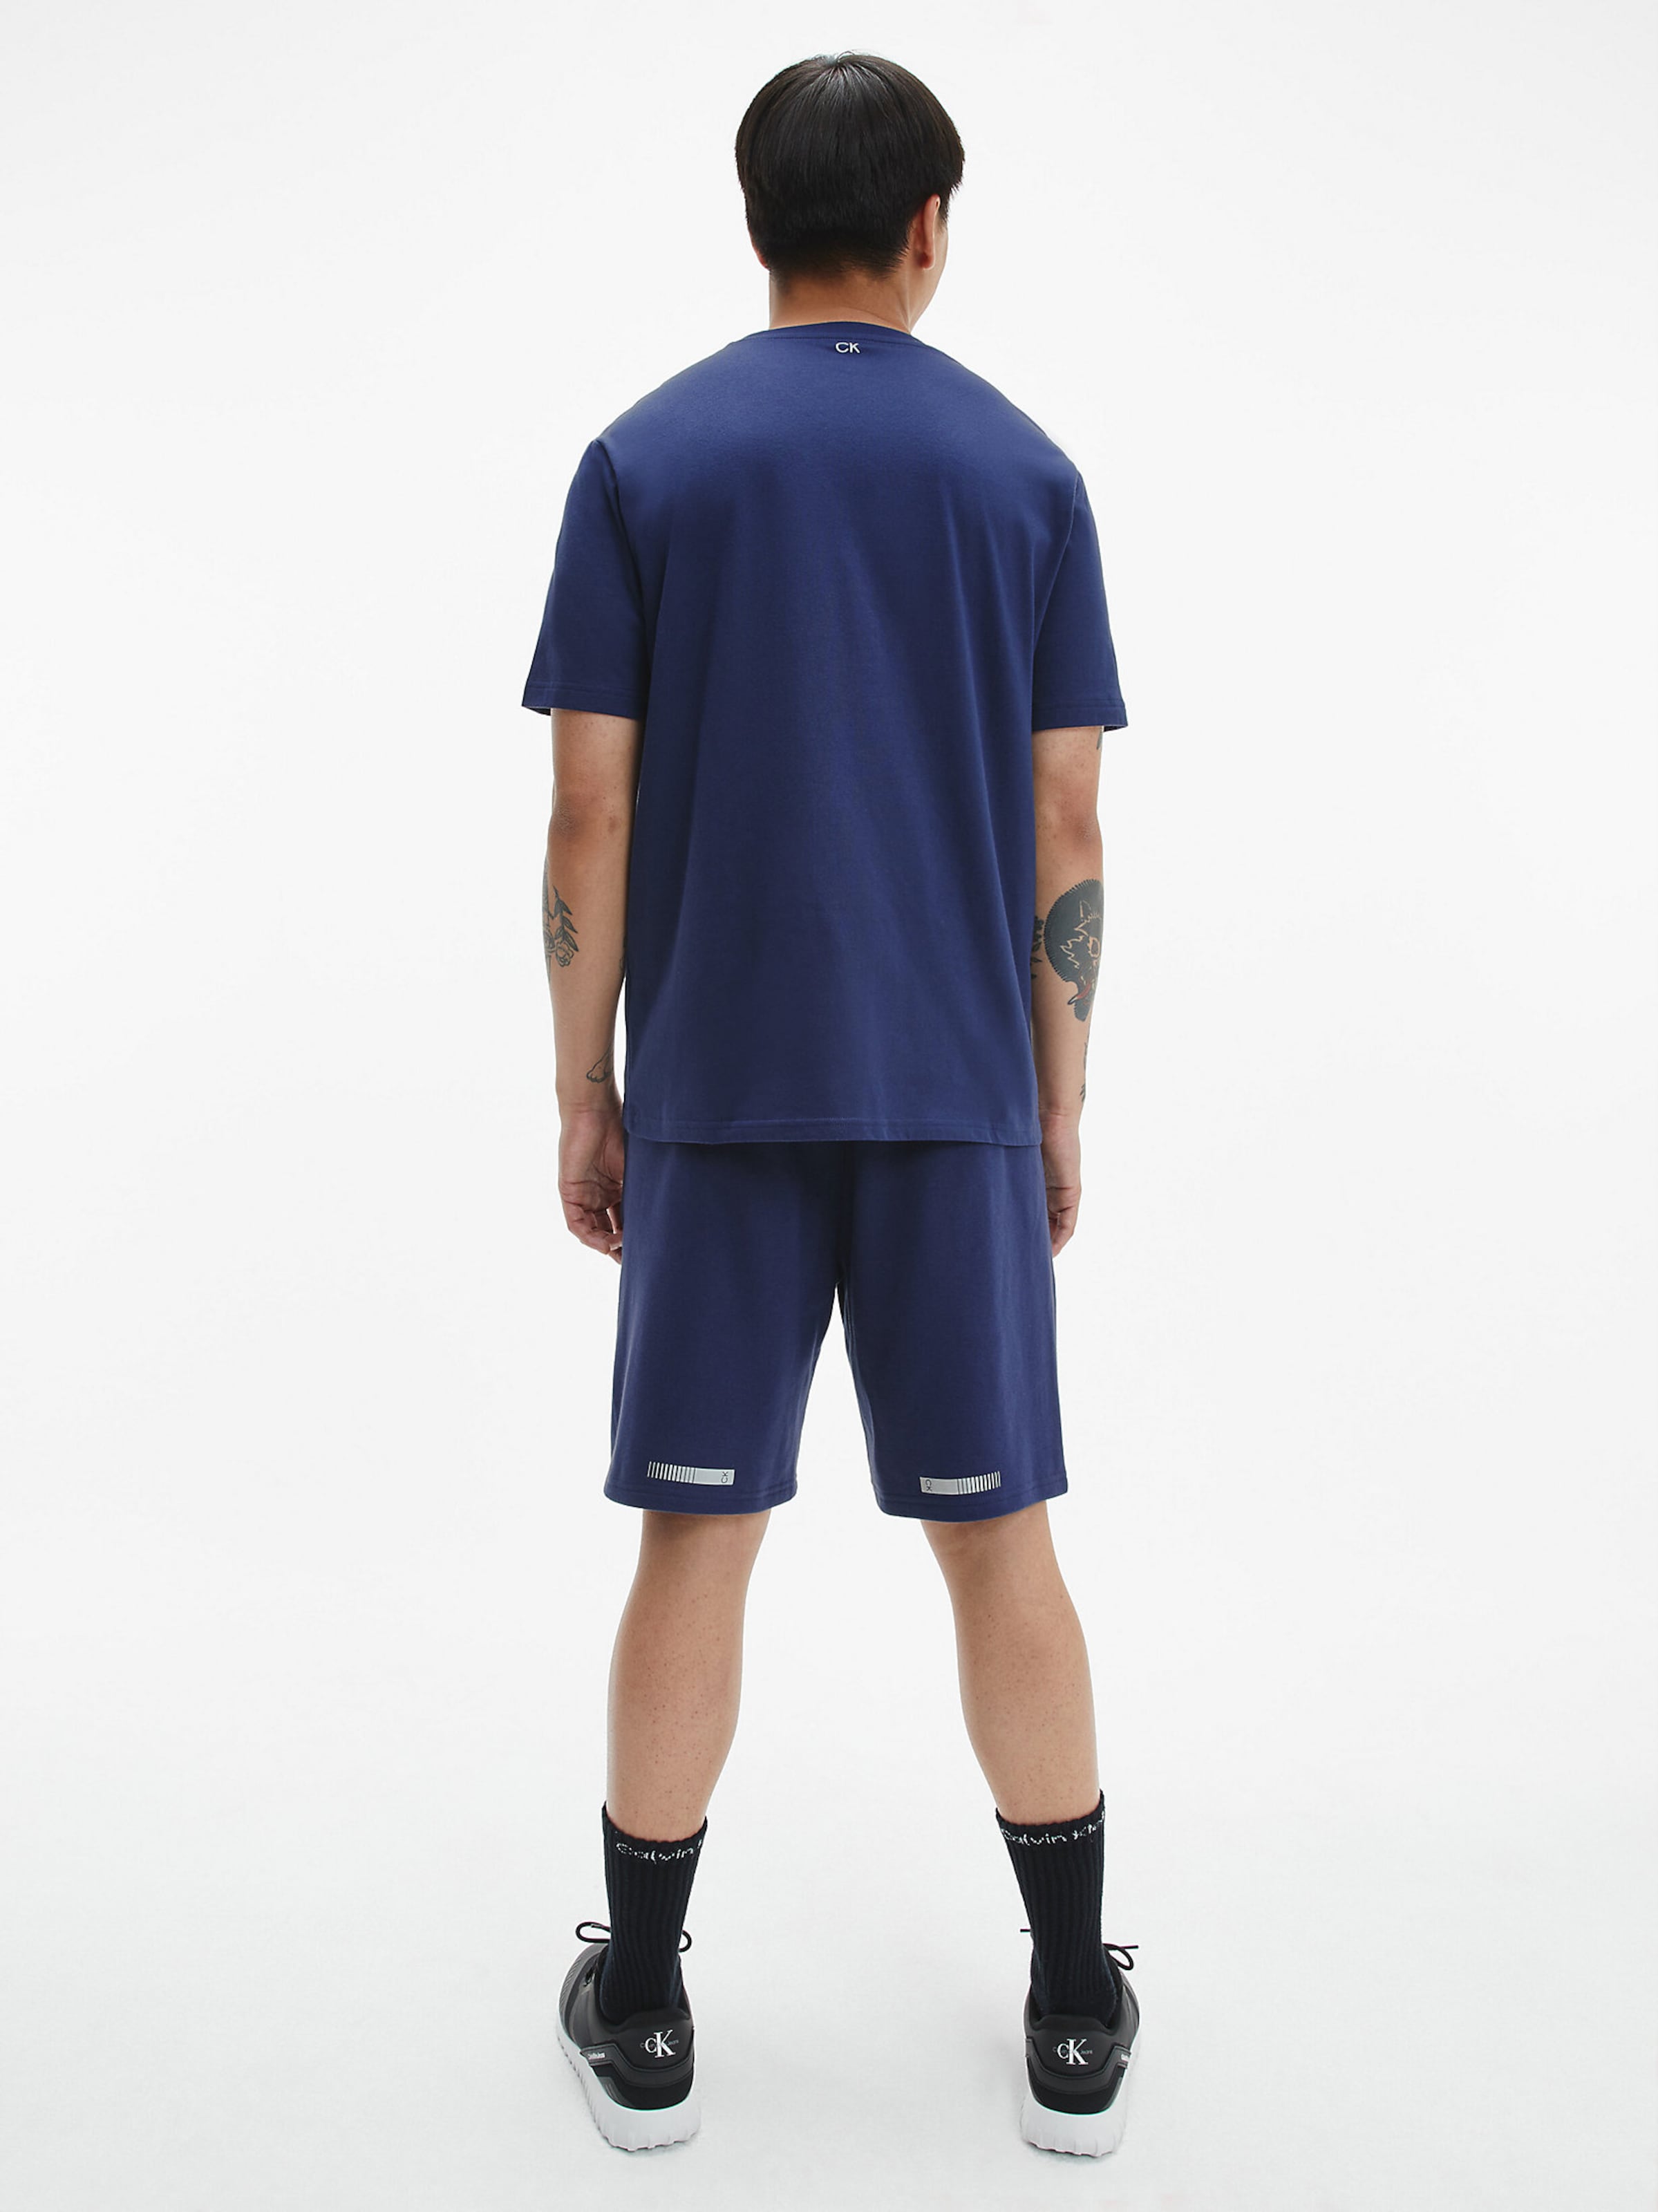 Männer Sportarten Calvin Klein Performance Shirt in Enzian - AF21269